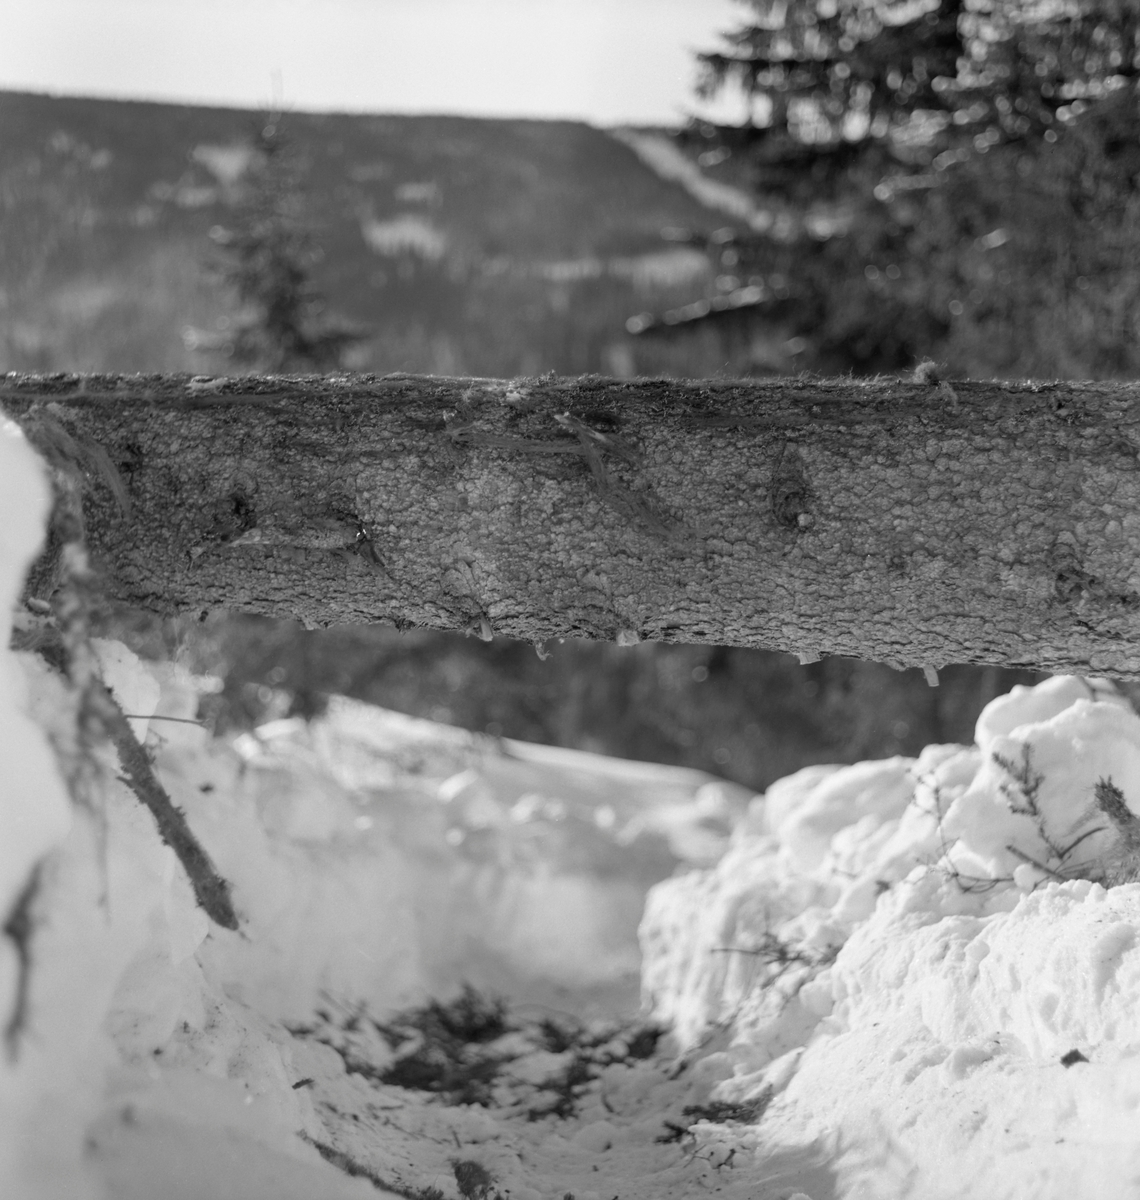 Ubarket granstokk, fotografert liggende på tvers av en hesteveg i snødekt terreng der det skulle foregå hankekjøring nedover i bratt li i Bødalen i Vestre Gausdal.  Denne grove og tunge stokken var trulig felt på tvers av kjørevegen, og måtte flyttes, både av hensyn til framkommeligheten og med henblikk på at den etter hvert skulle transporteres ut av skogen.  Fotografiet er tatt i samband med at Norsk Skogbruksmuseum i mars 1967 fikk gjort opptak til en kulturhistorisk film om hankekjøringstradisjonene i denne bygda.  På filmen kan vi se hvordan to skogsarbeidere løfter den ene enden av stokken, slik at den blir liggende parallelt med hestevegen og etter hvert kan rulles ned i vegløpet, der den «slås inn» i hankekjøringsvendinga ved hjelp av baklekkjer som tres gjennom forankres i foranliggende stokk ved hjelp av pjekser.  Fotografiet tyder på at skogsarbeiderne har måkt kjørevegen med spader før de kunne starte kjøringa.  I bakgrunnen skimter vi dalføret med bratte, skogkledde lier. 